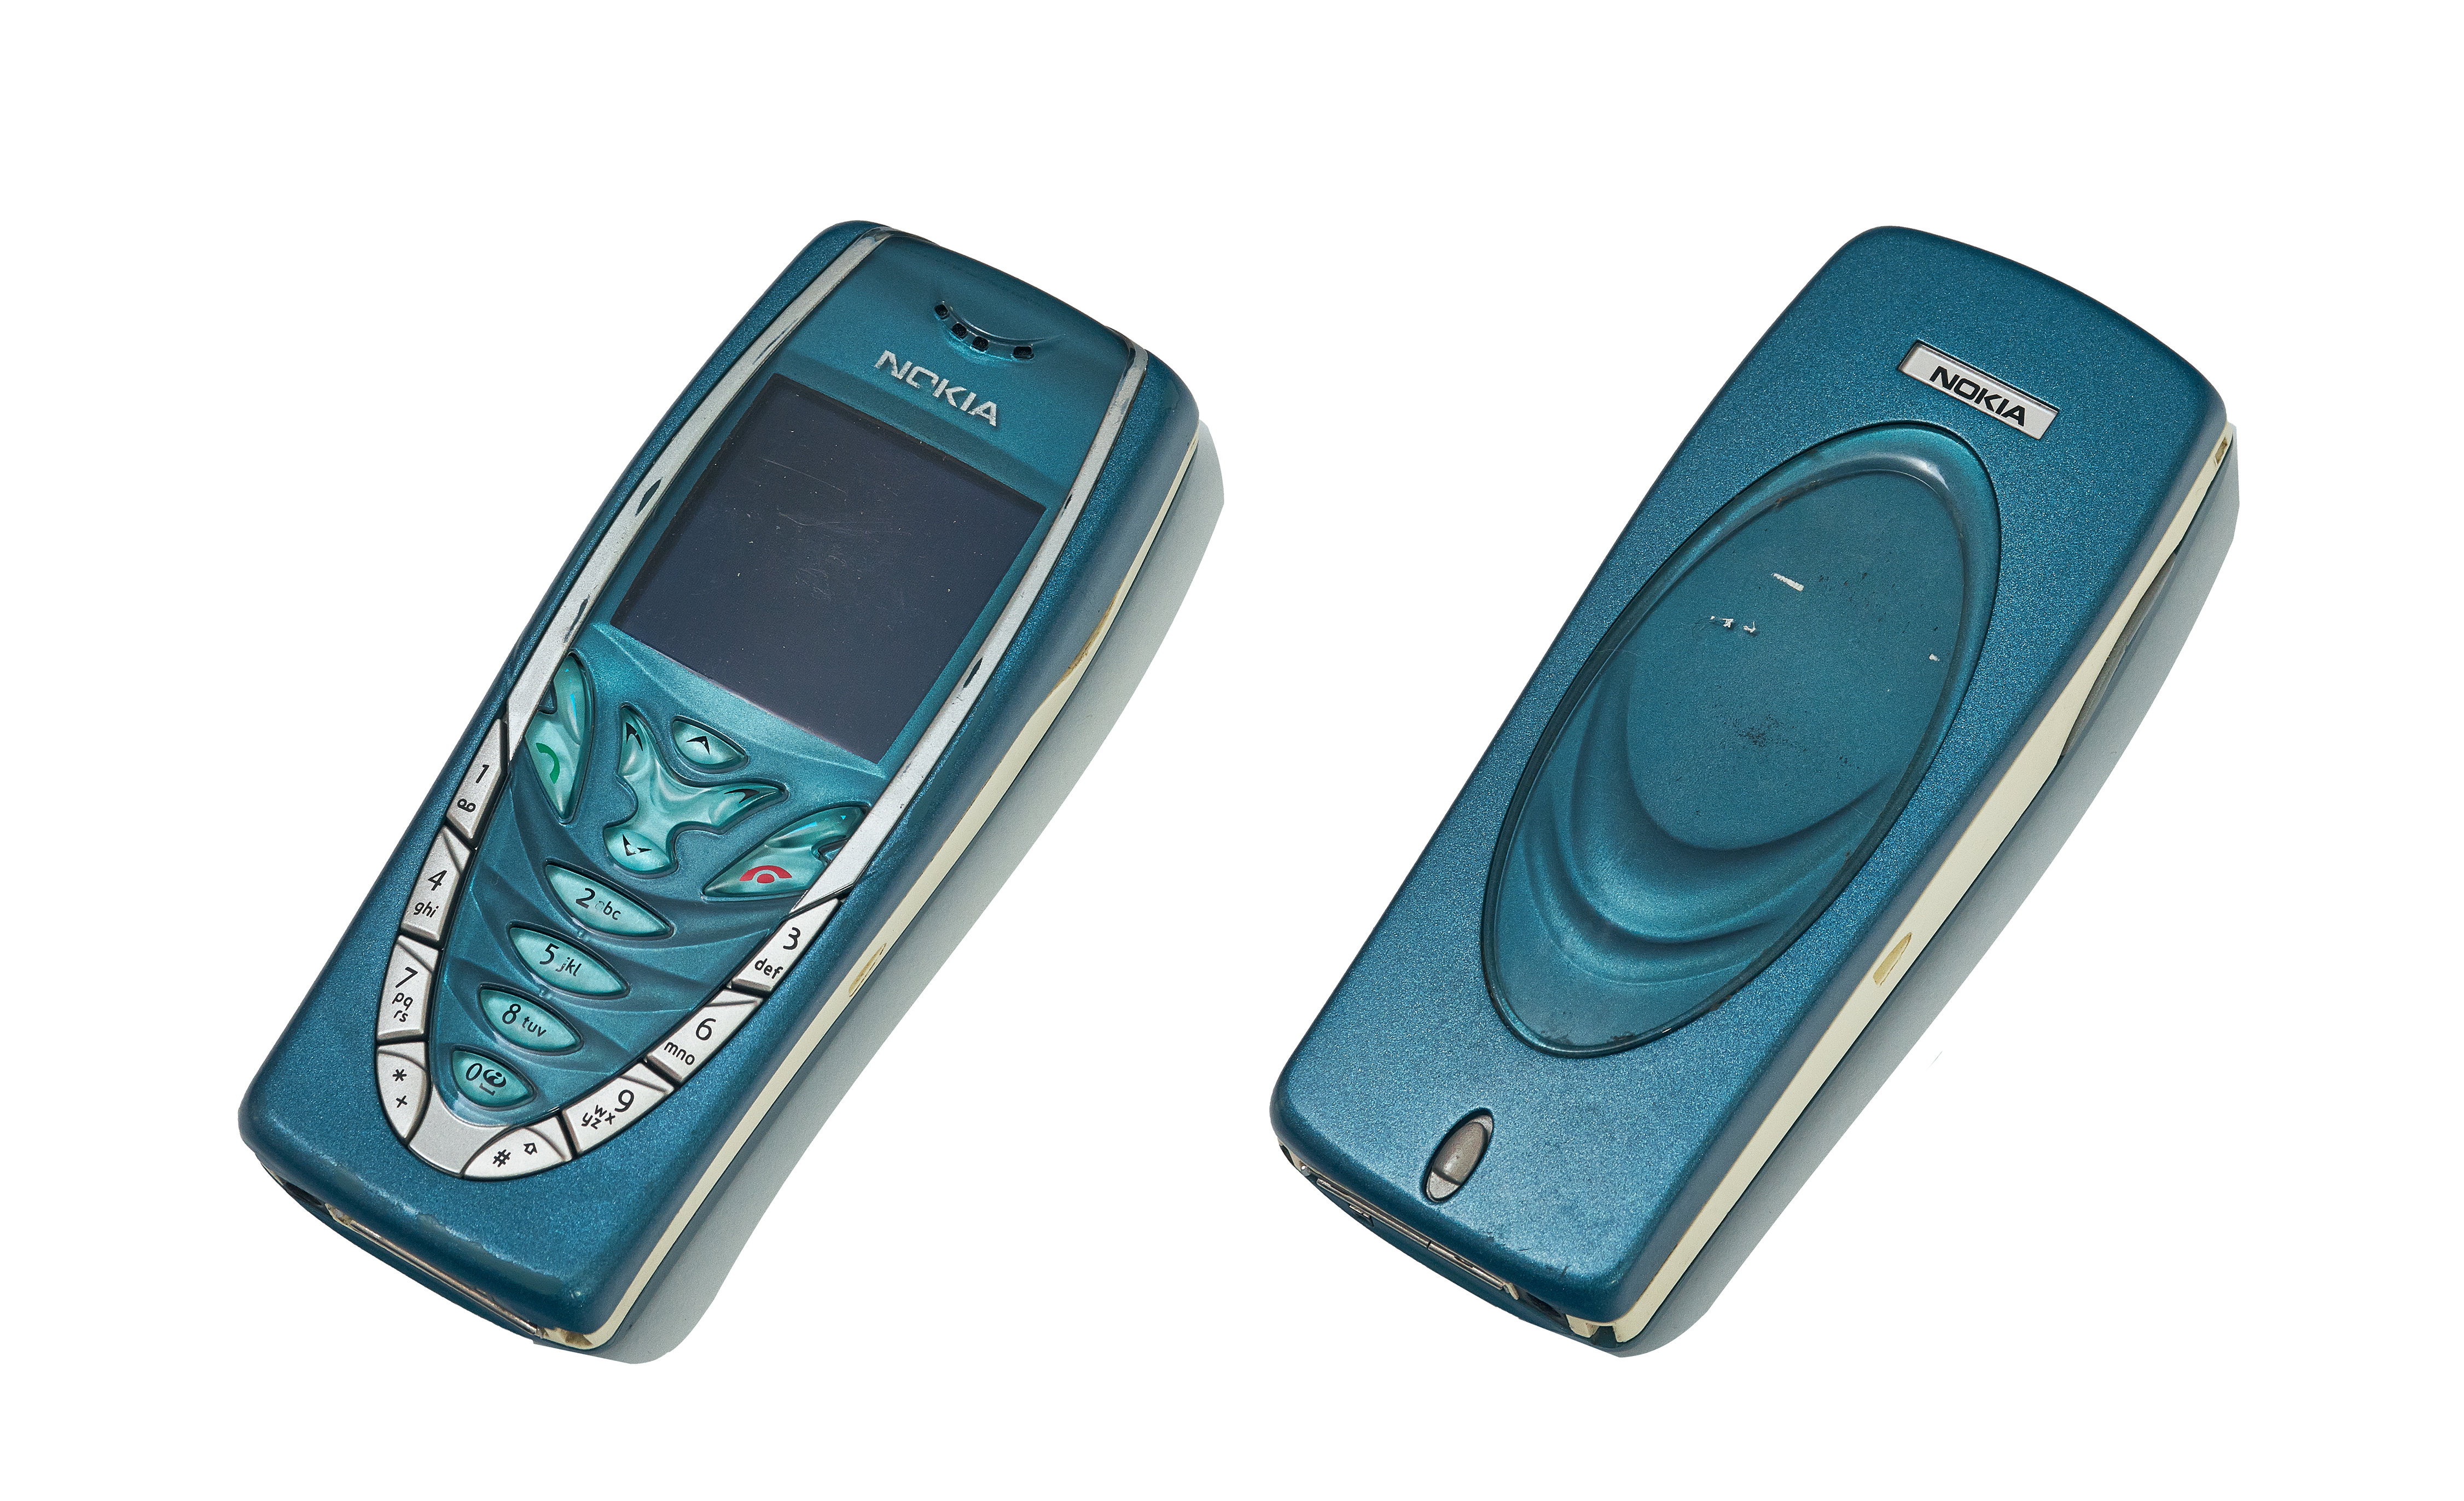 Nokia 7210 | Connery